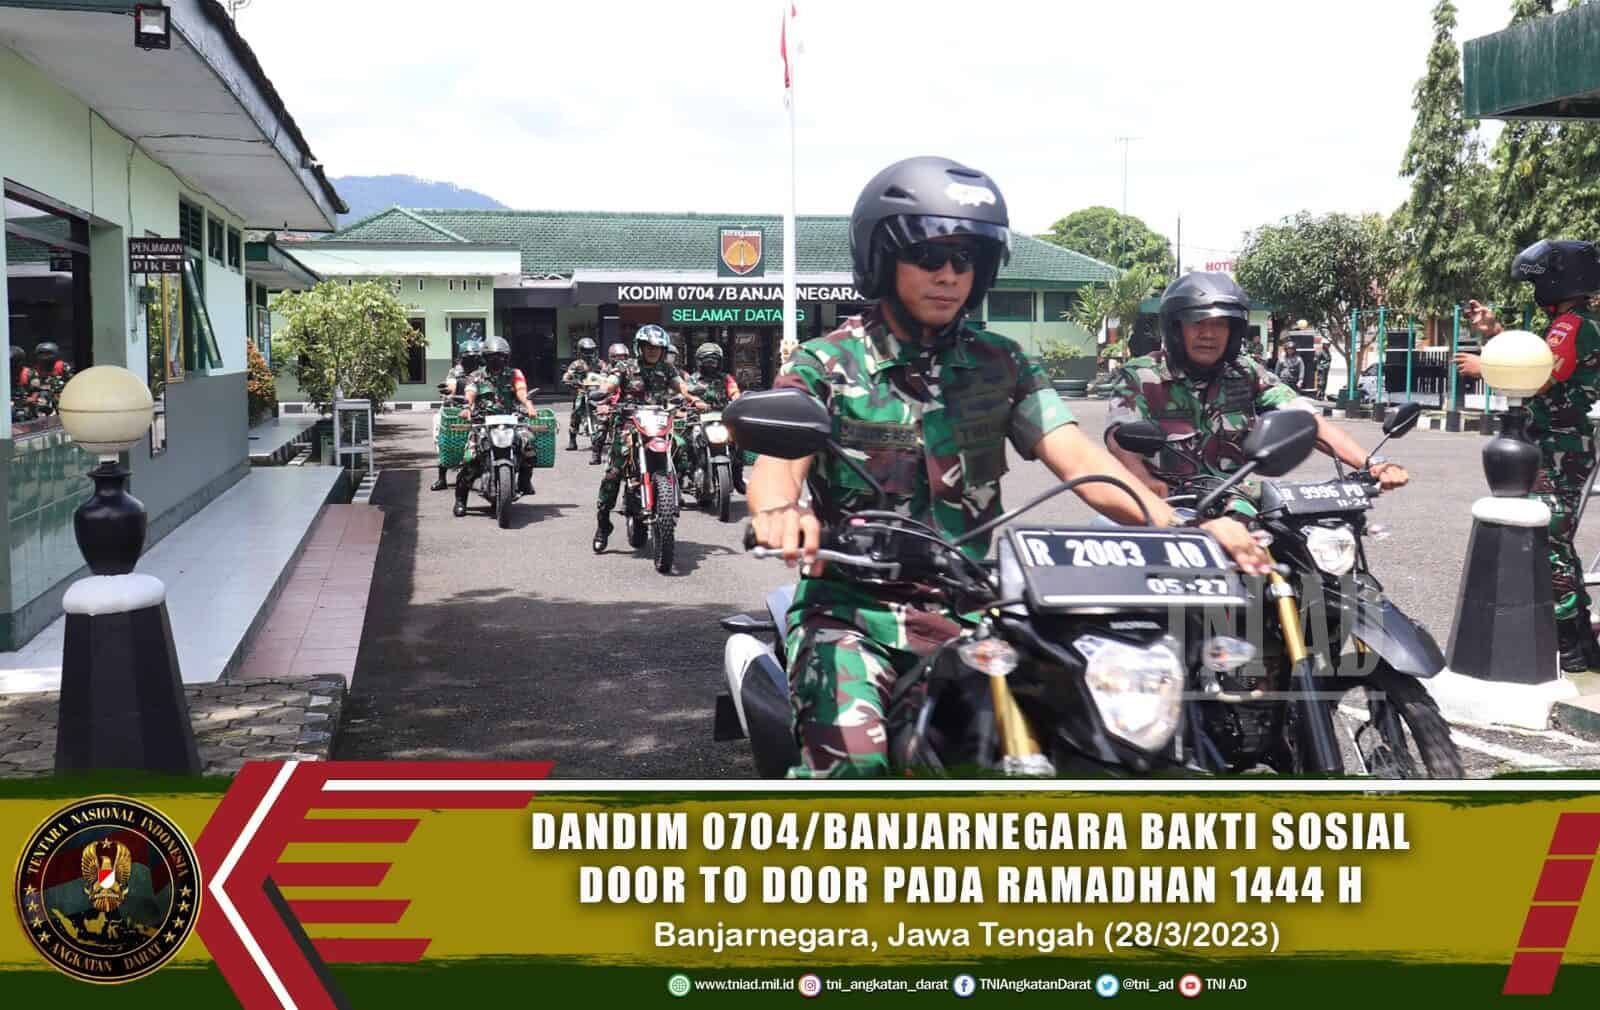 Dandim 0704 Banjarnegara Bakti Sosial Door To Door Berbagi Menyambut Ramadhan 1444 H